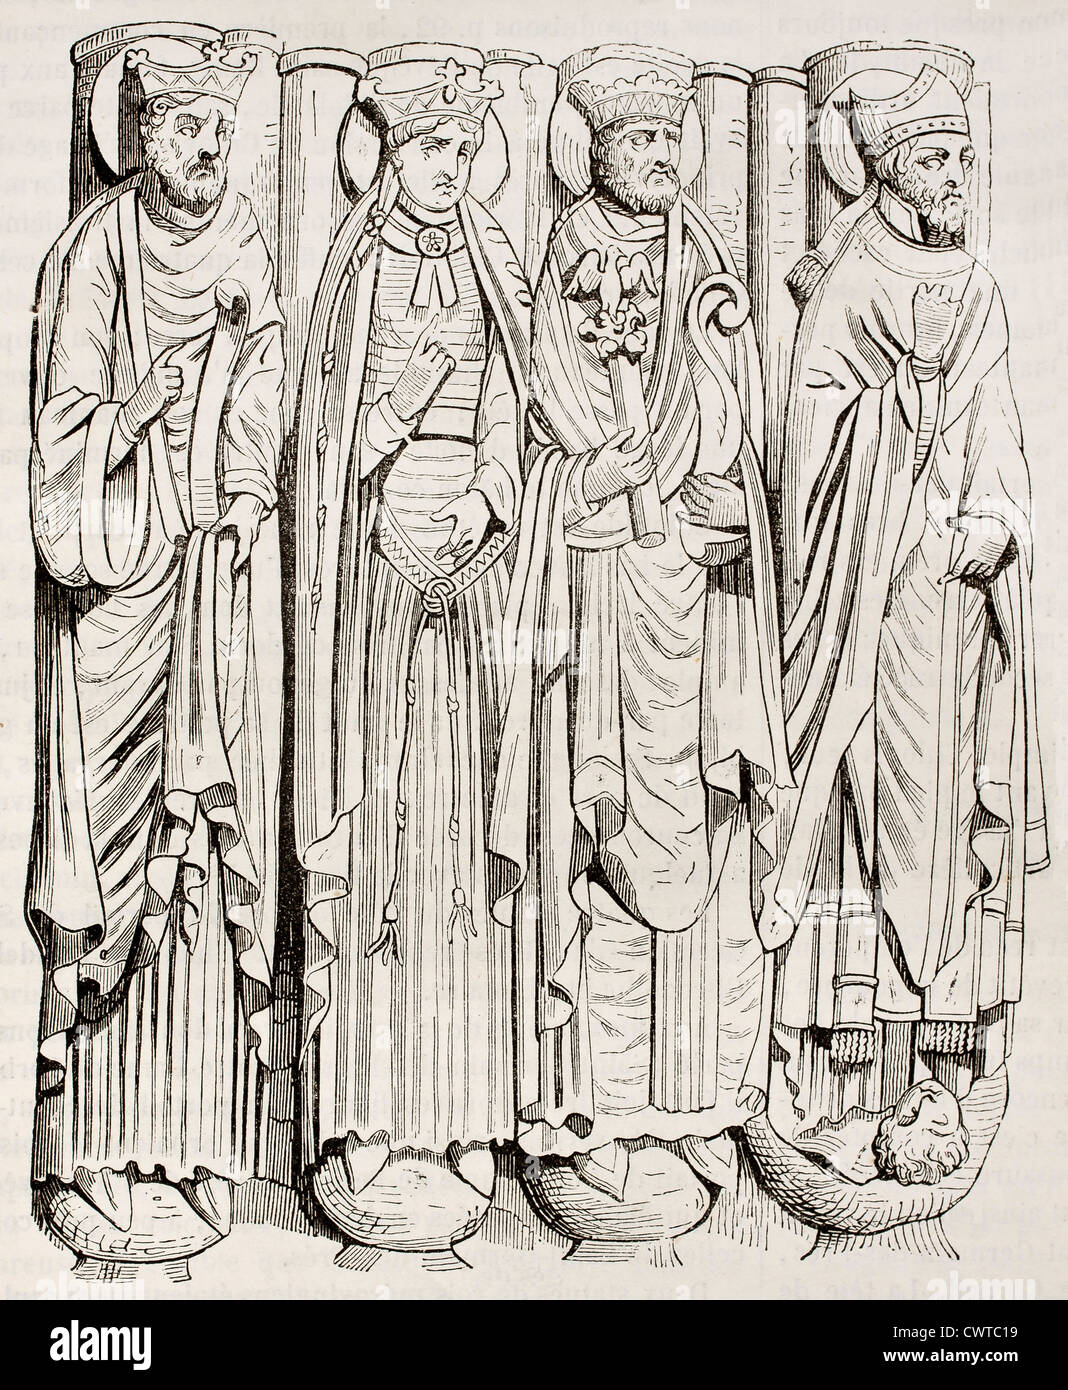 Statues of Saint-Germain-des-Pres abbey porch Stock Photo